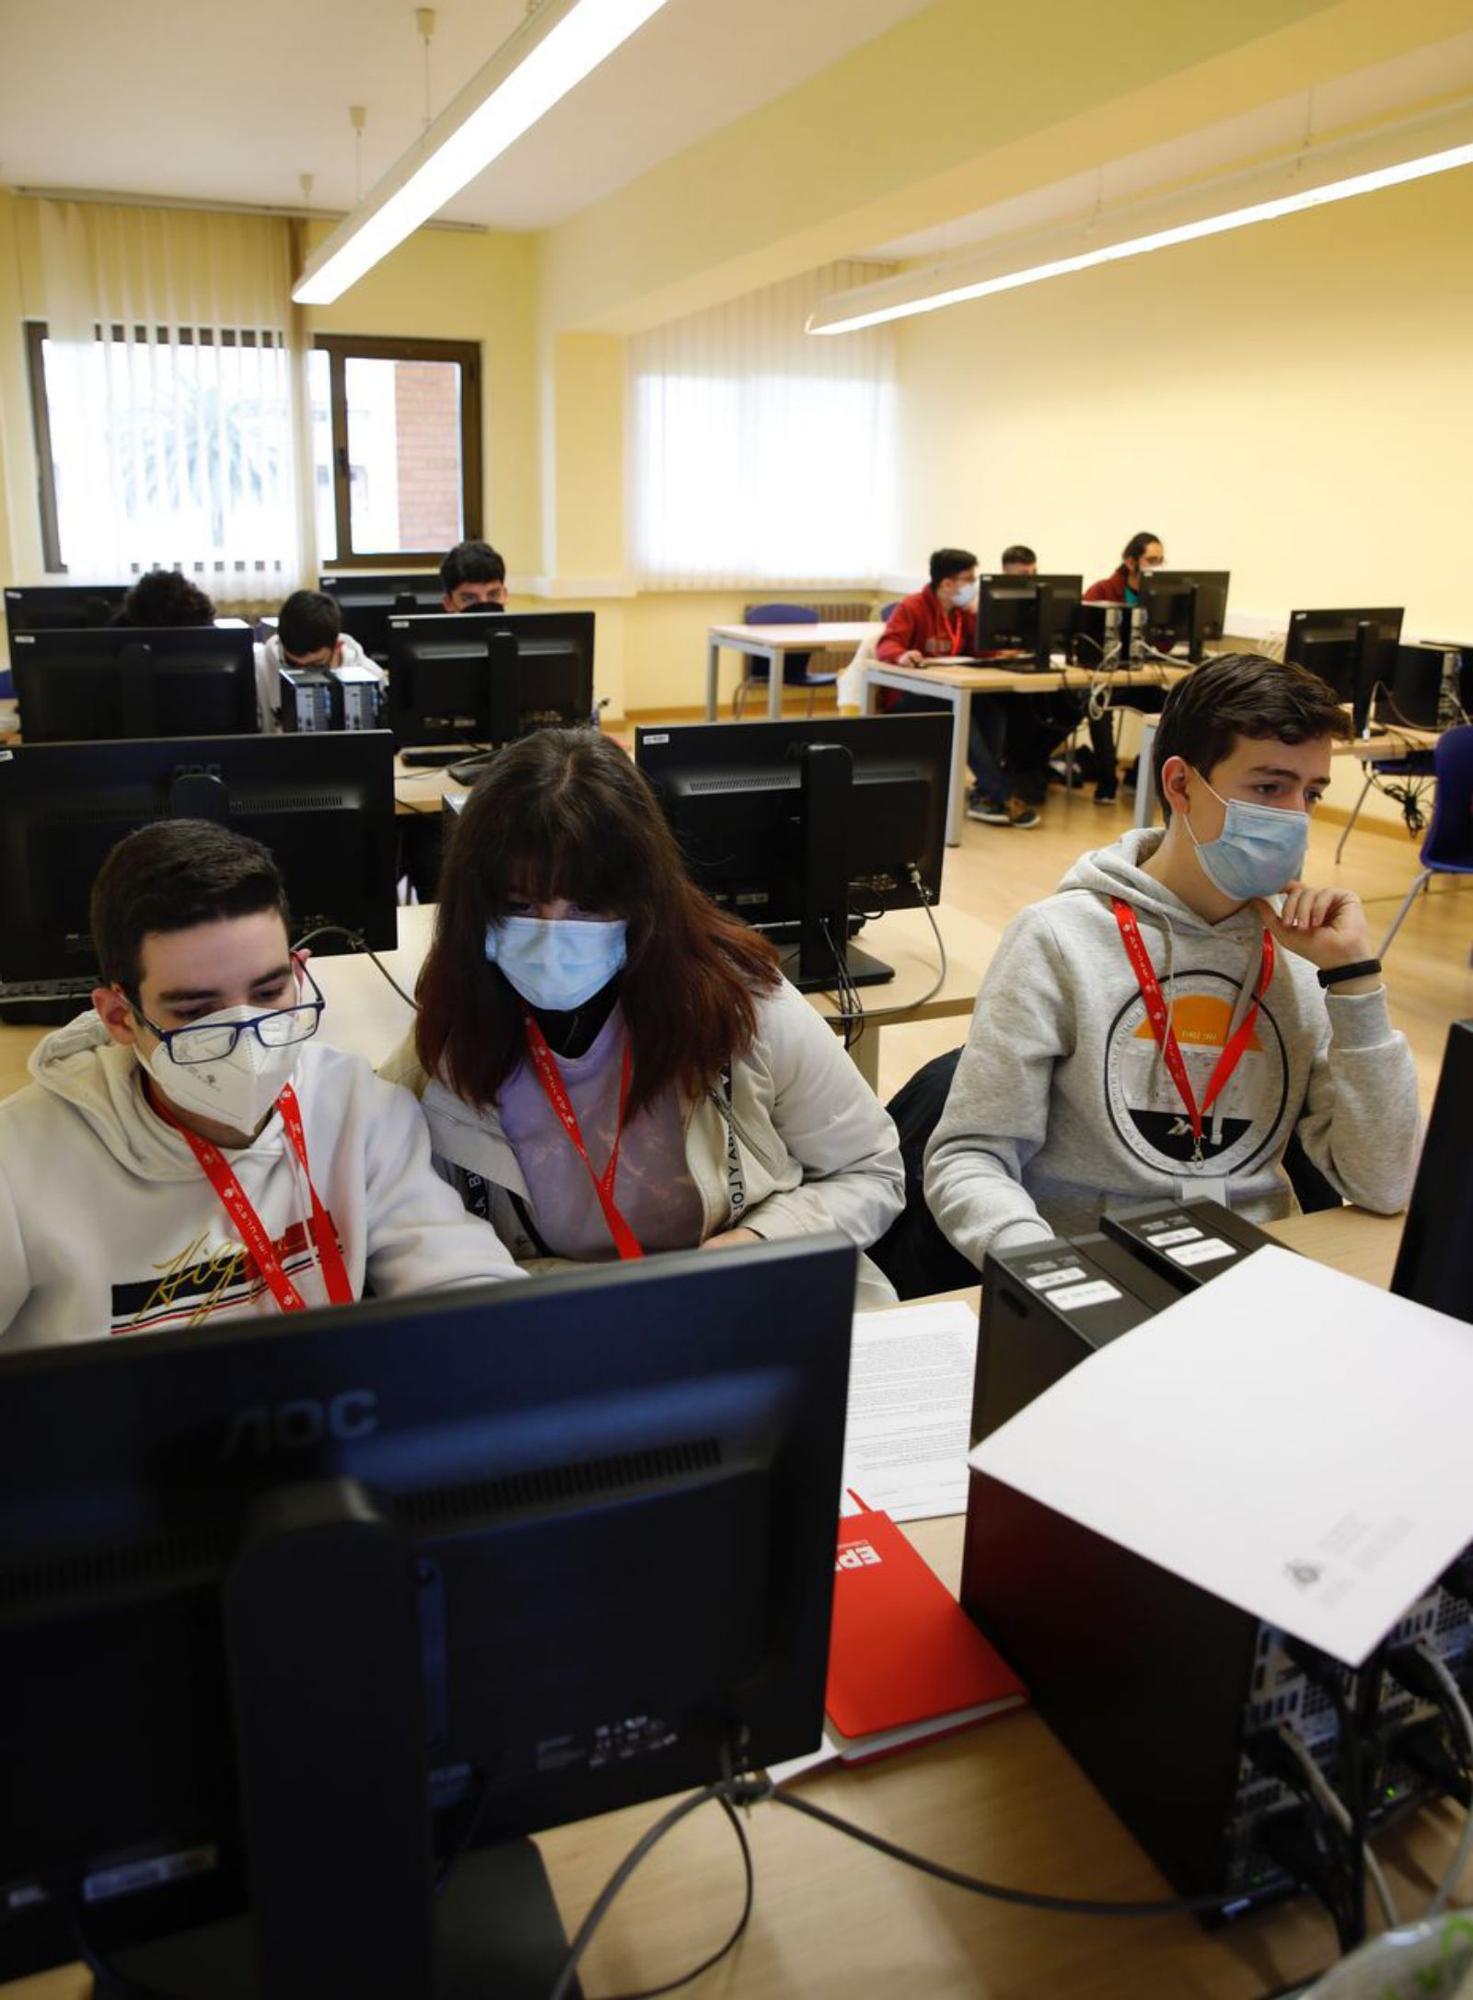 Participantes en las XI Olimpiadas de Informática, ayer, en un aula de la Escuela Politécnica de Ingeniería de Gijón. | Ángel González